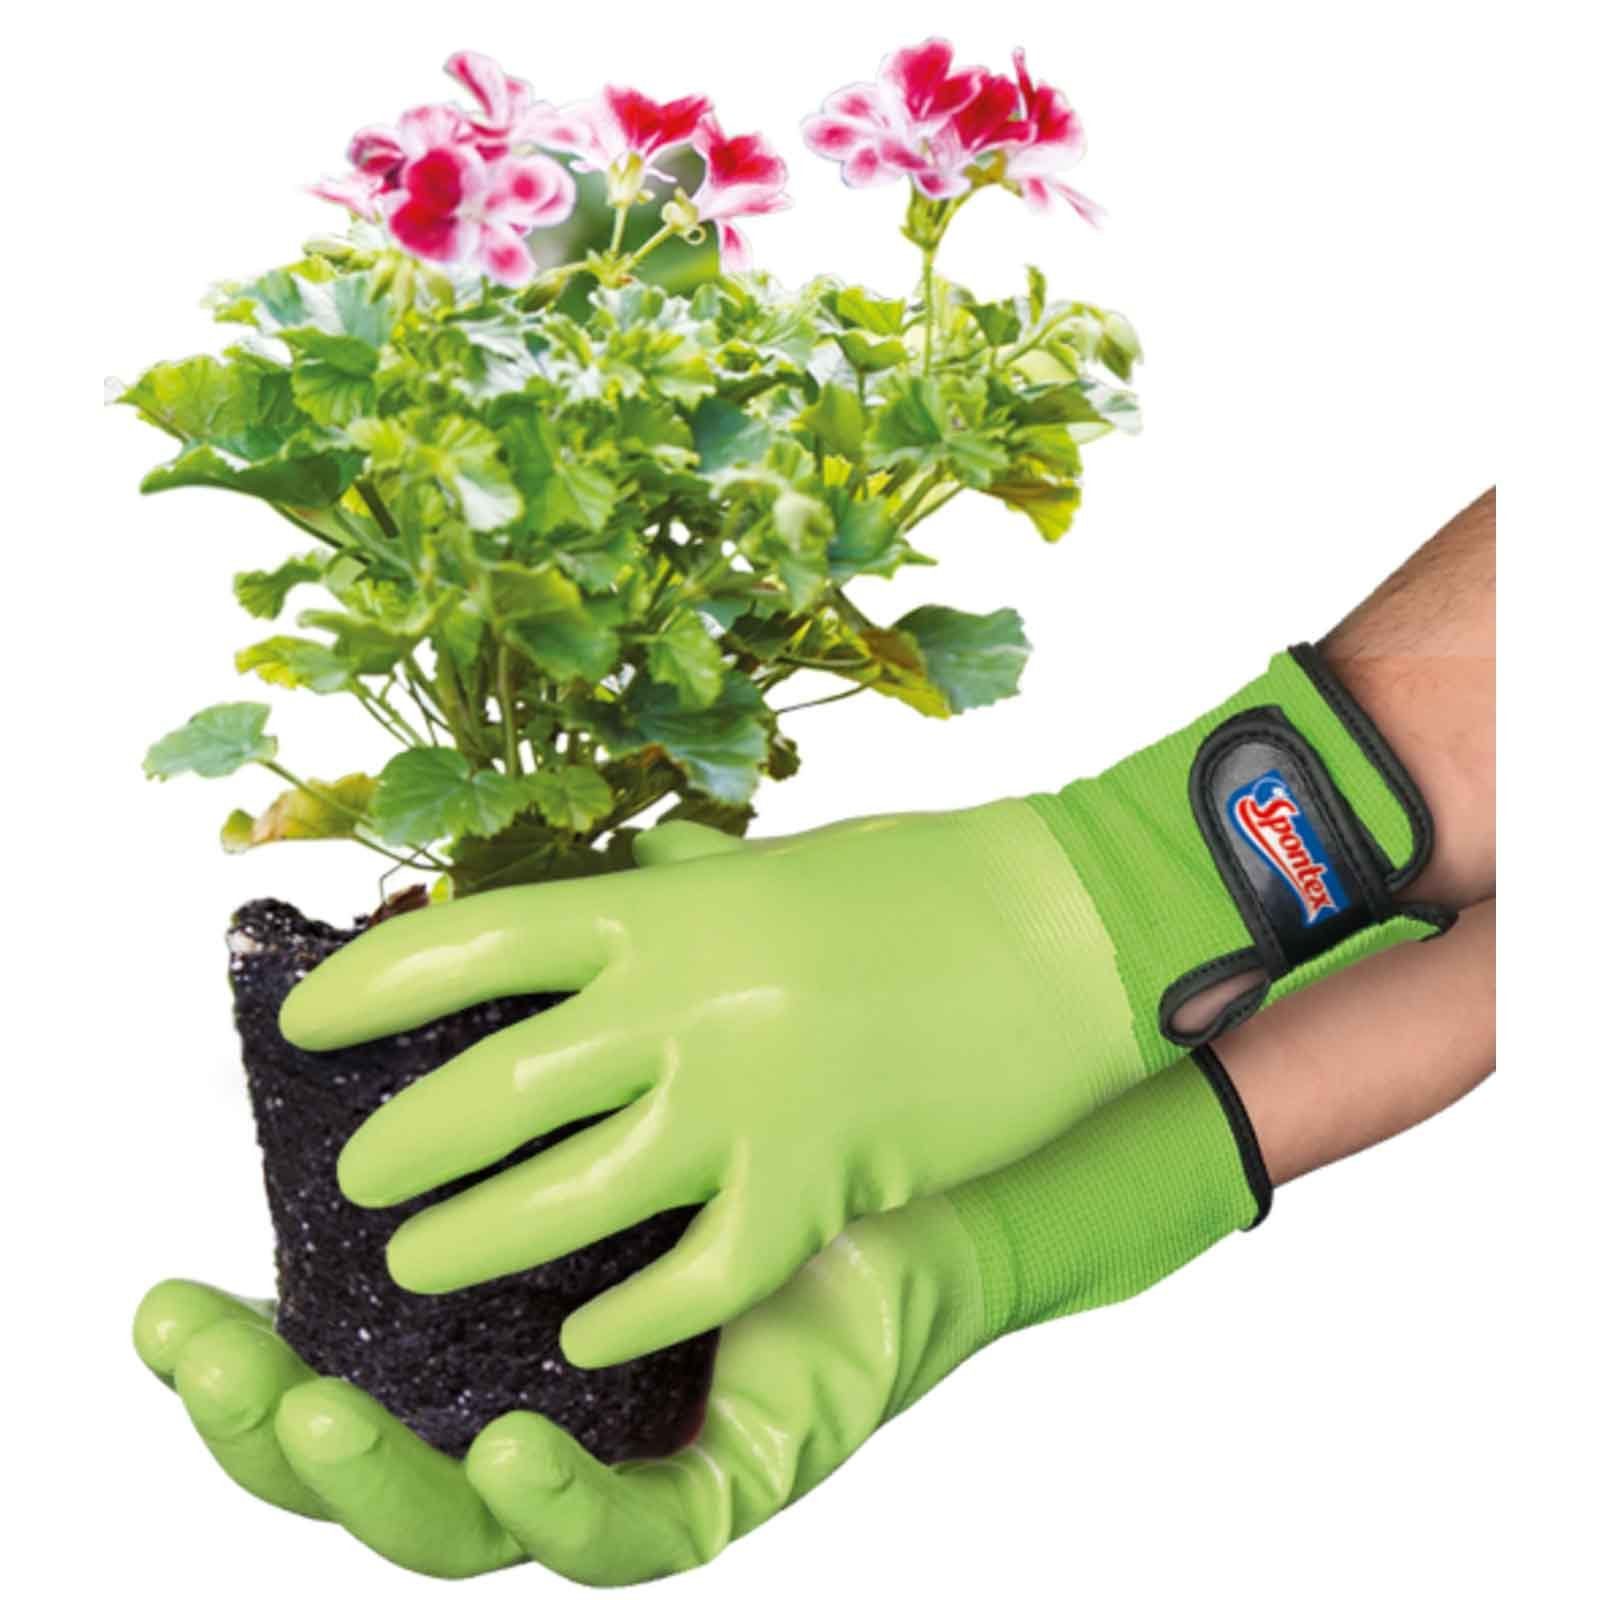 (Spar-Set) Gartenarbeit, Spontex Gartenhandschuhe SPONTEX Klettverschluss Nitril-Handschuhe Damenhandschuh,